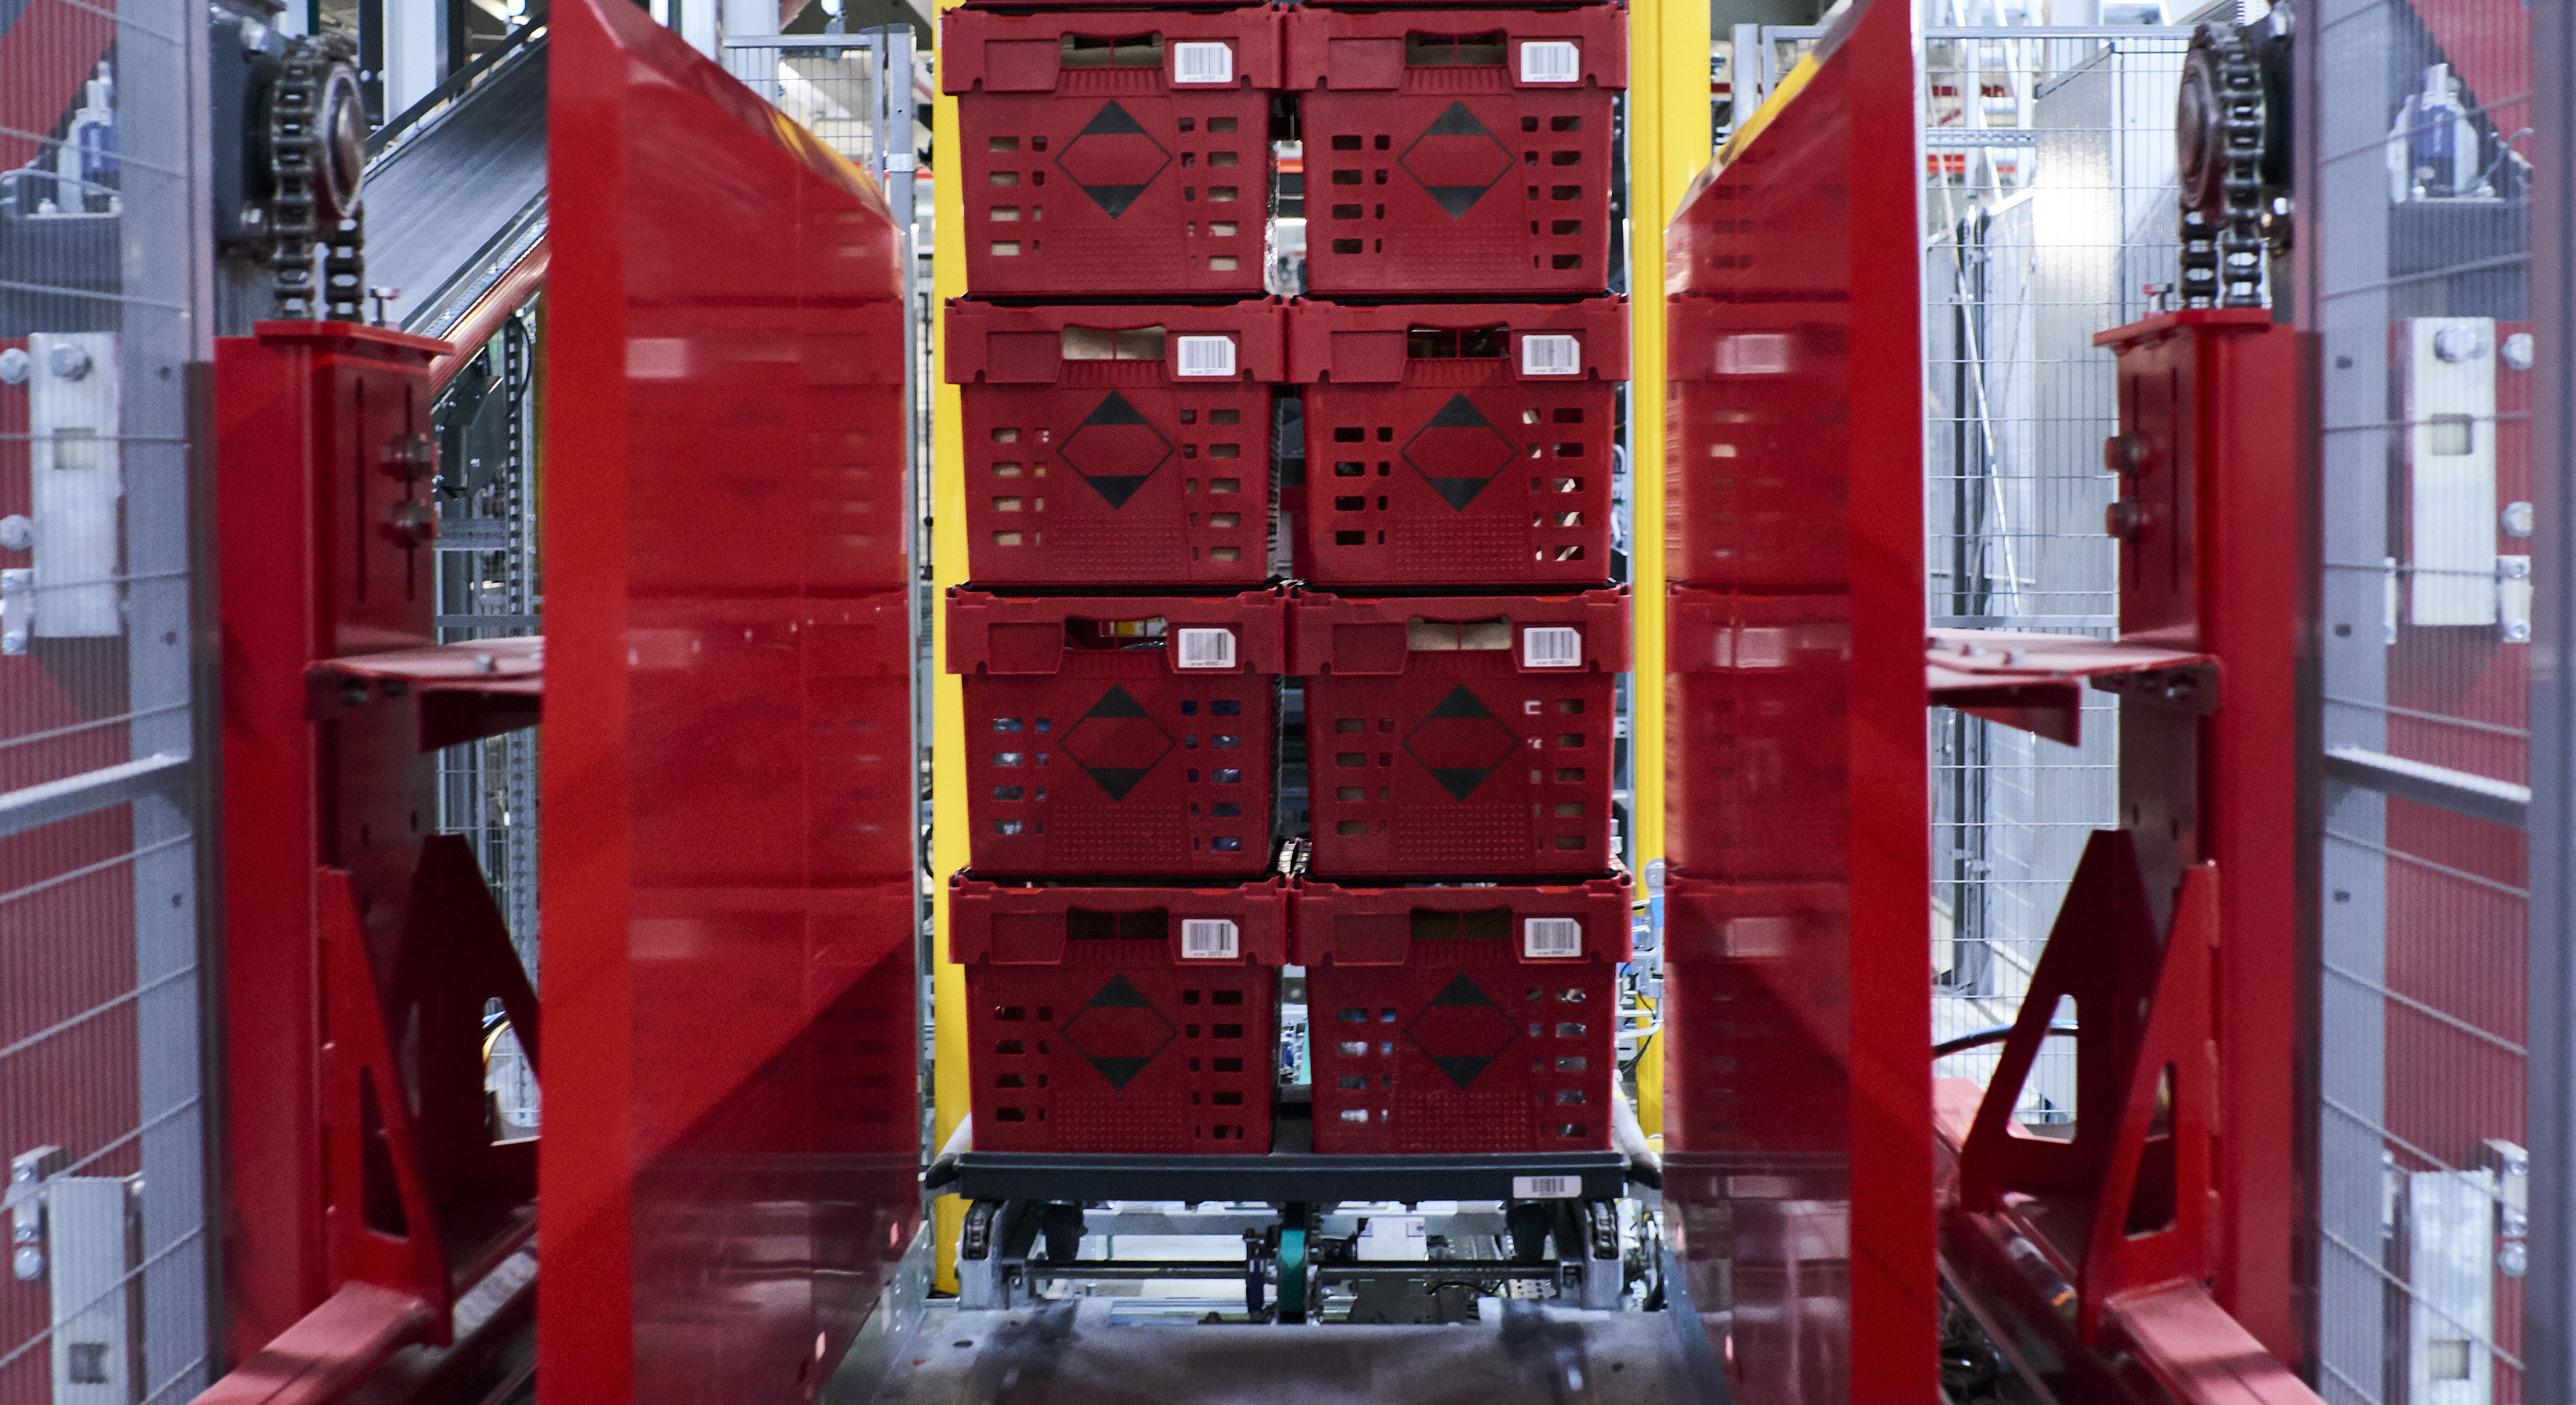 L’image montre des conteneurs rouges qui sont empilés les uns sur les autres à l’aide d’une technologie entièrement automatisée.